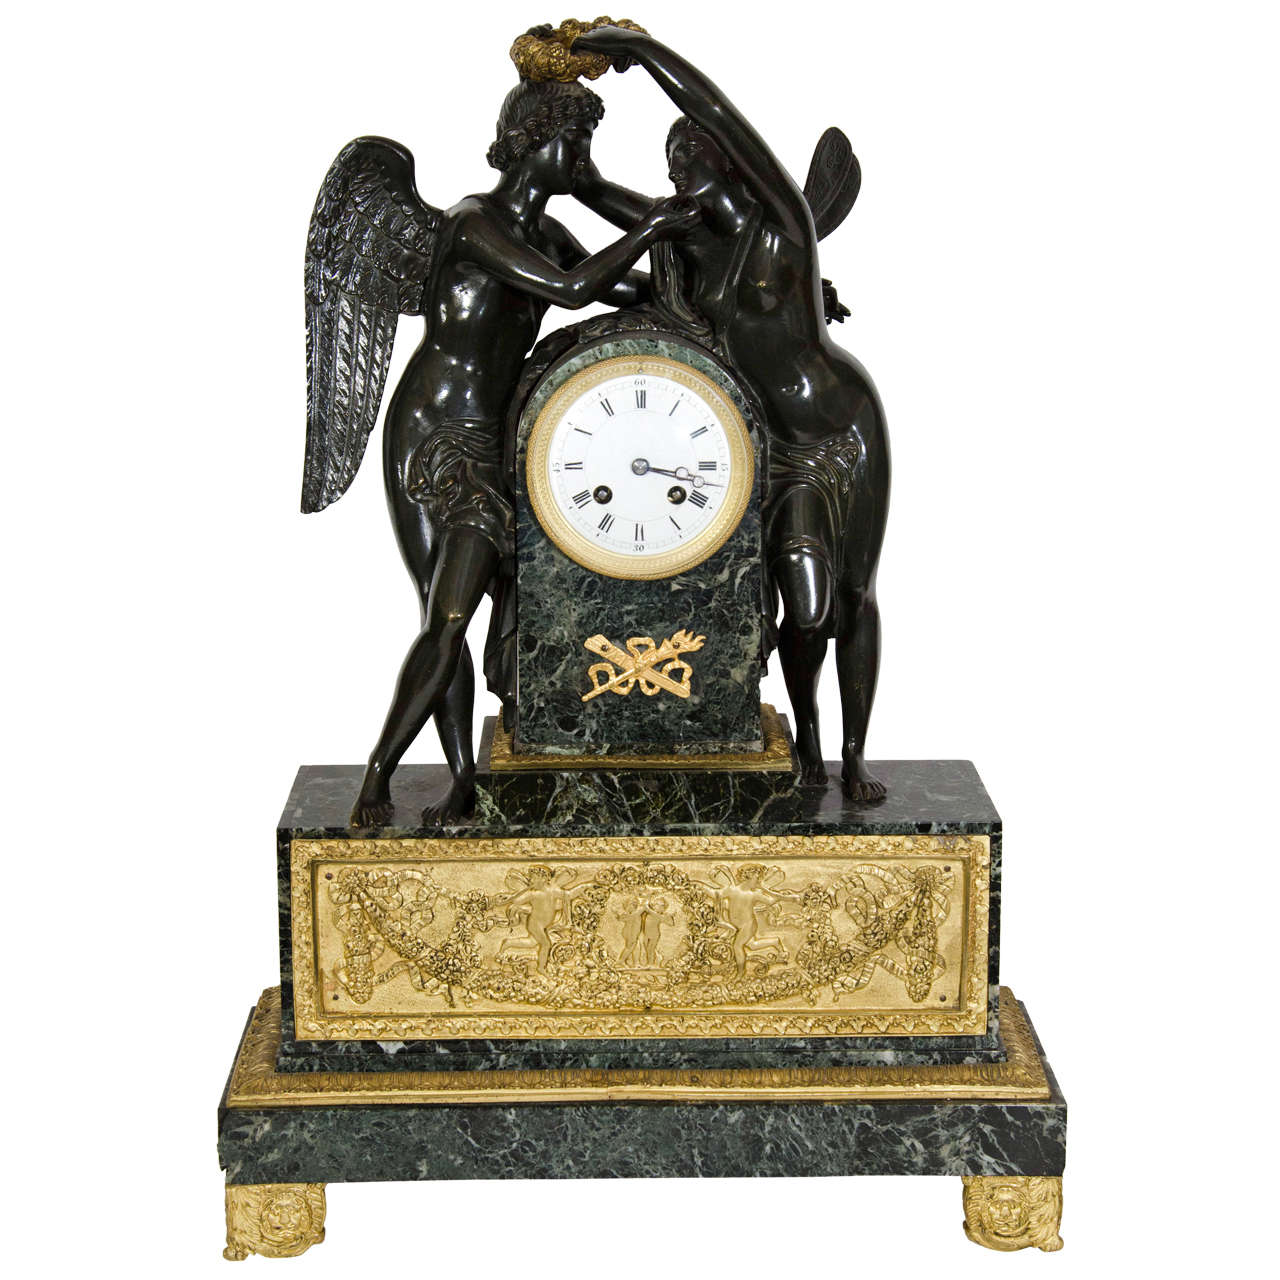 Grande horloge figurative française ancienne de style Empire en bronze et marbre